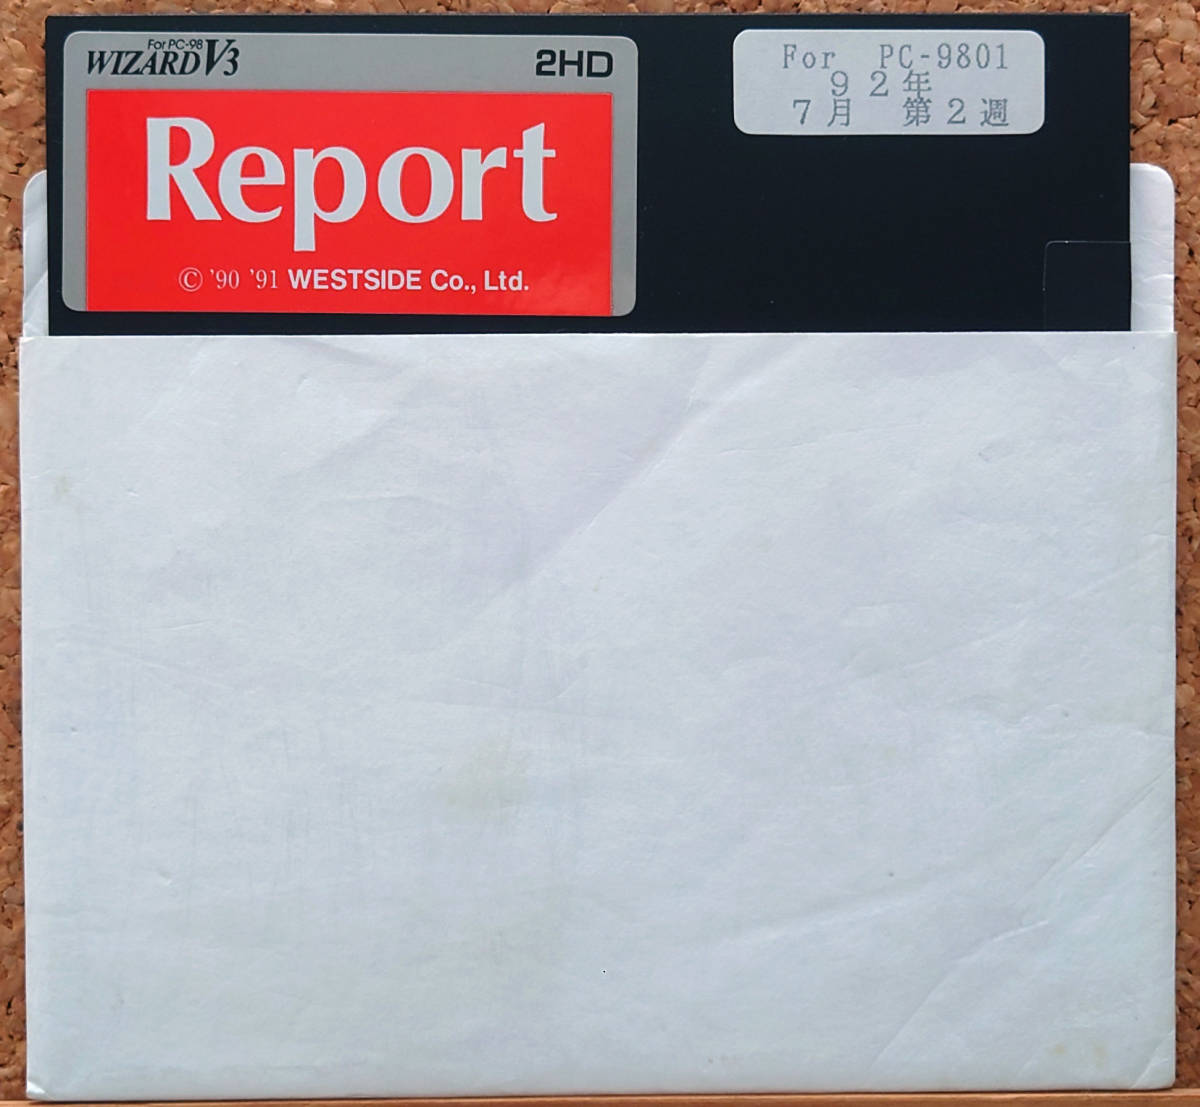 月刊ディスクマガジン for PC-98 ウィザードレポート/WIZARD V3 REPORT 1992年7月第2週 5"2HD/ファイラー/ウエストサイドの画像1